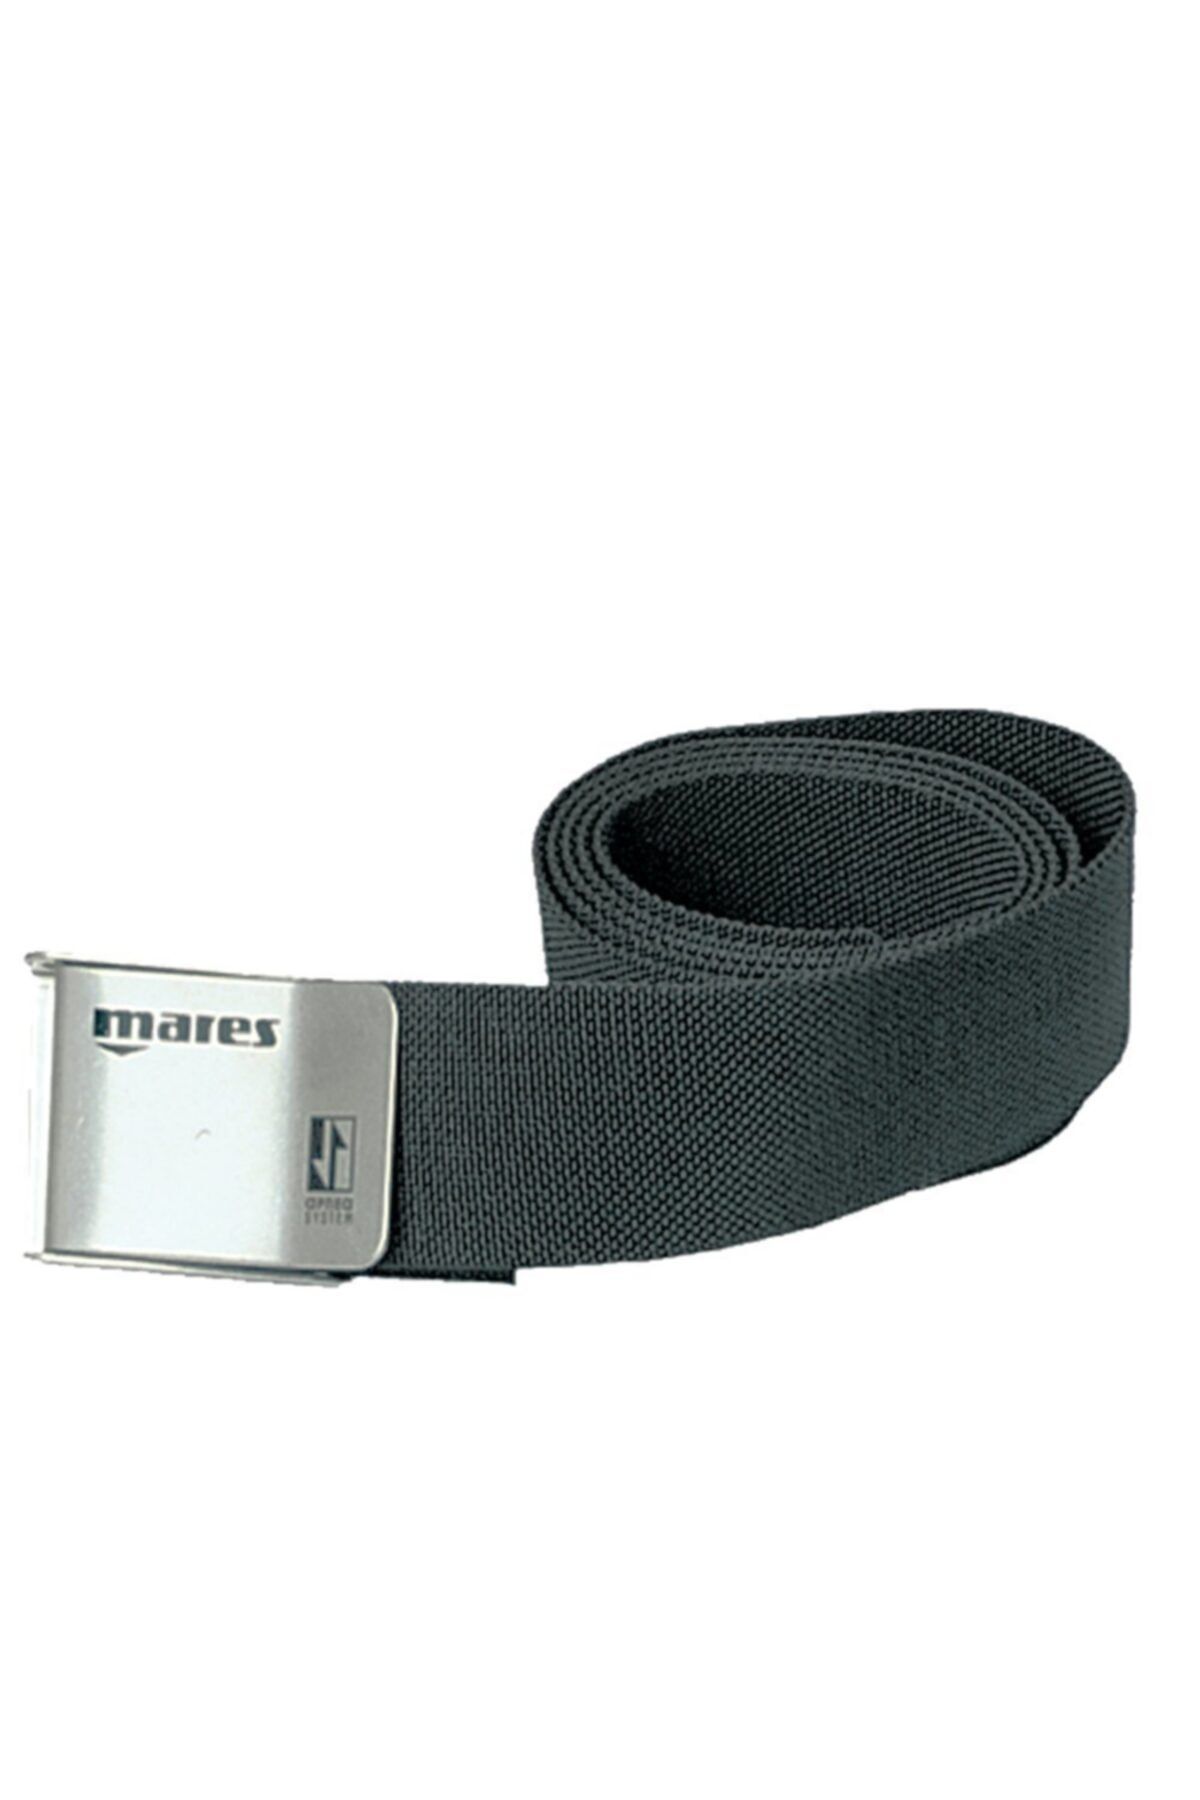 Mares Weight Belt Ağırlık Kemeri Metal Tokalı